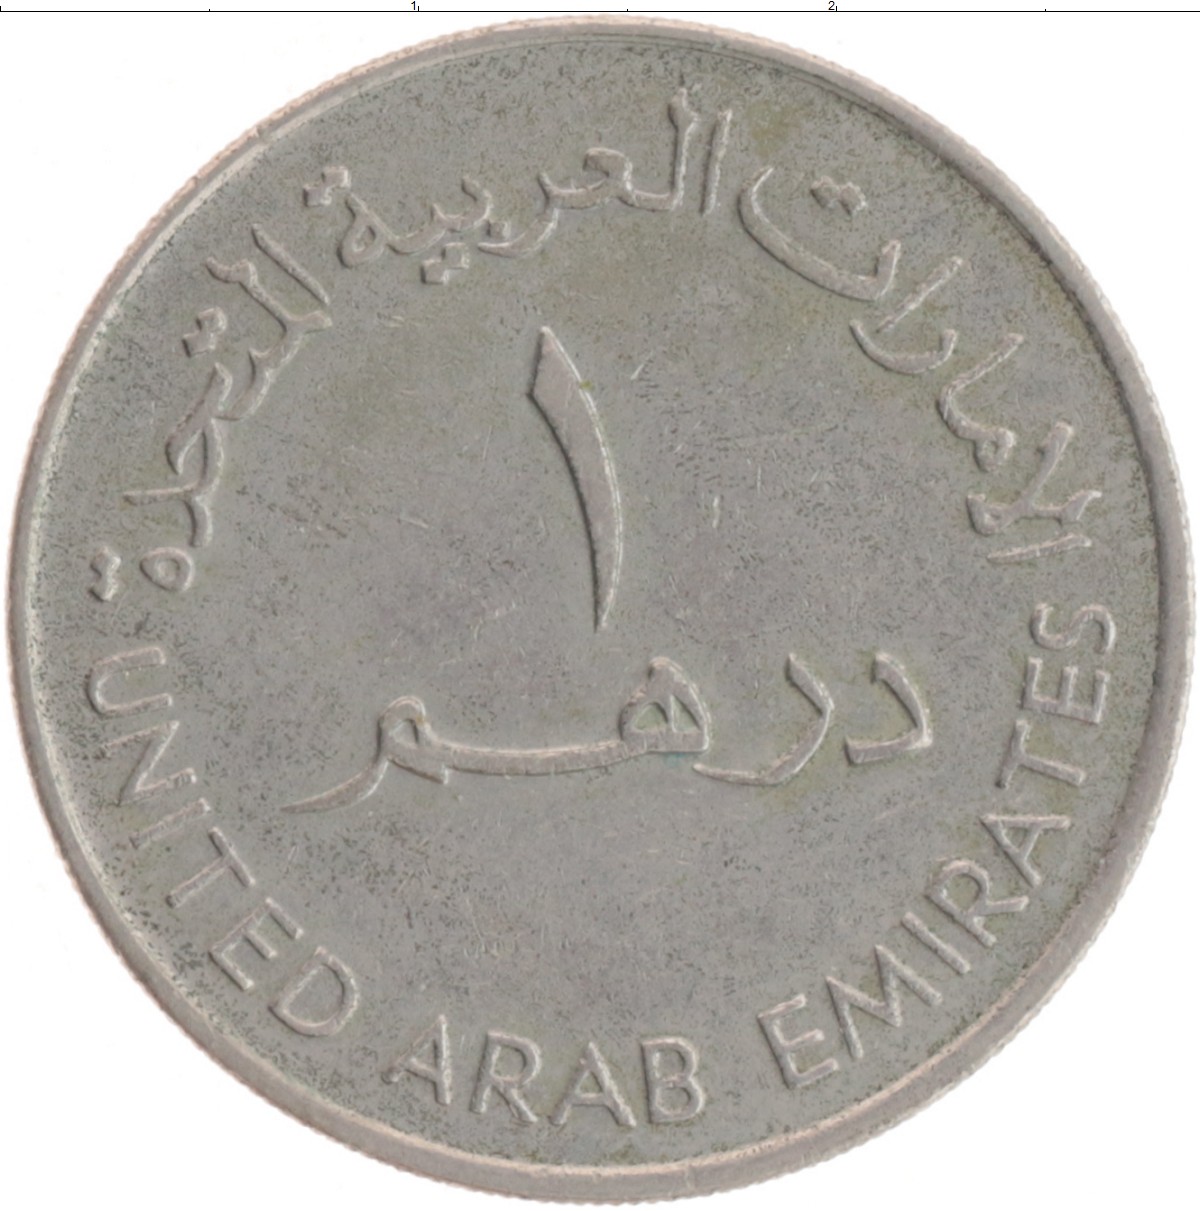 Рубль дирхам курс на сегодня в дубае. Монета 1 дирхам (ОАЭ) арабские эмираты.. Монеты ОАЭ 1 дирхам. Монеты арабских Эмиратов 5 дирхам. 1 Дирхам ОАЭ В рублях.